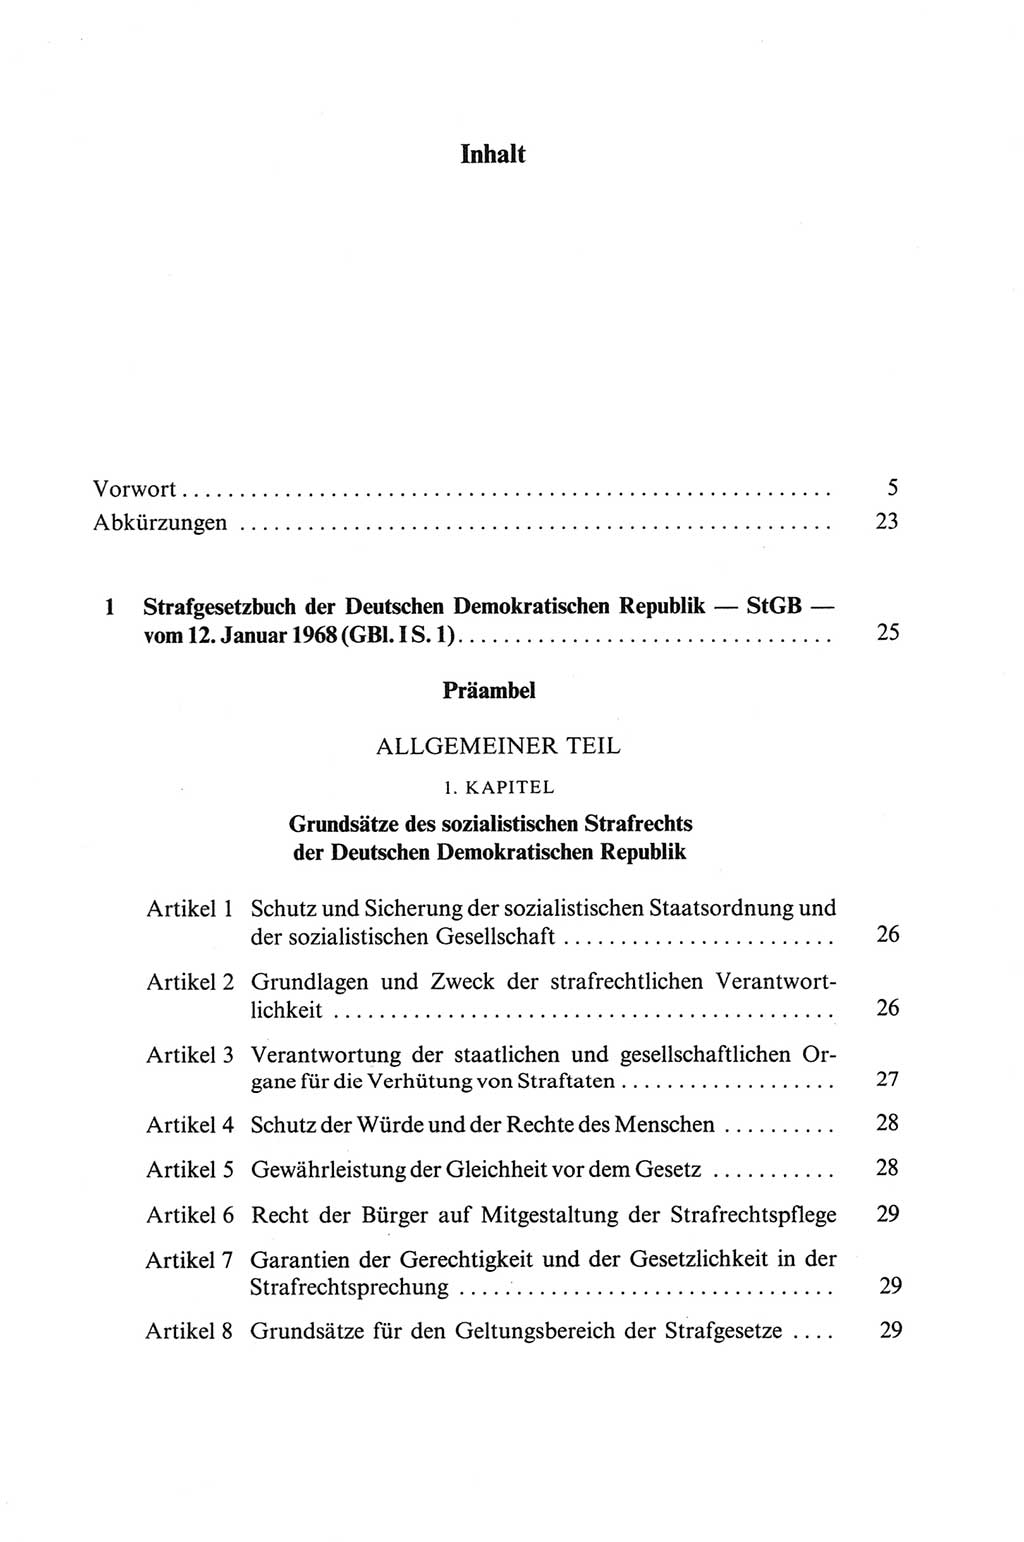 Strafgesetzbuch (StGB) der Deutschen Demokratischen Republik (DDR) und angrenzende Gesetze und Bestimmungen 1968, Seite 7 (StGB Ges. Best. DDR 1968, S. 7)